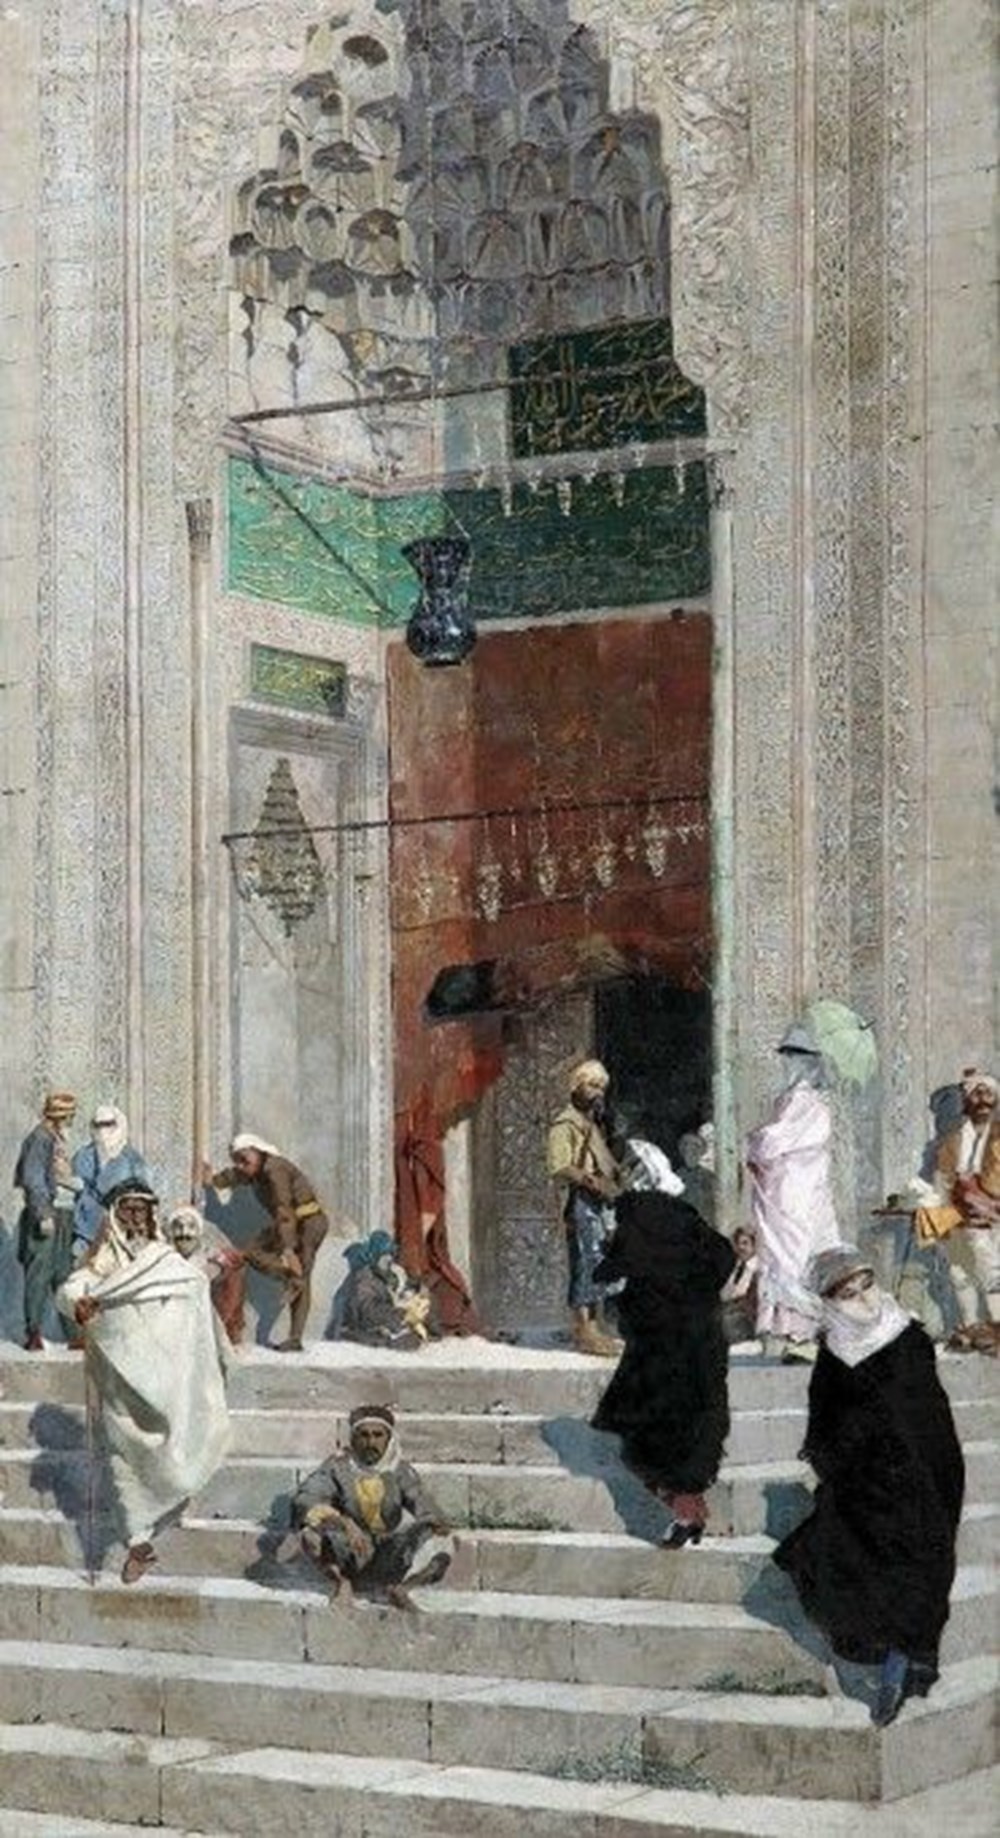 3 haftada 3 tablosu rekor fiyata satılan Osman Hamdi Bey hakkında bilmeniz gerekenler - 11